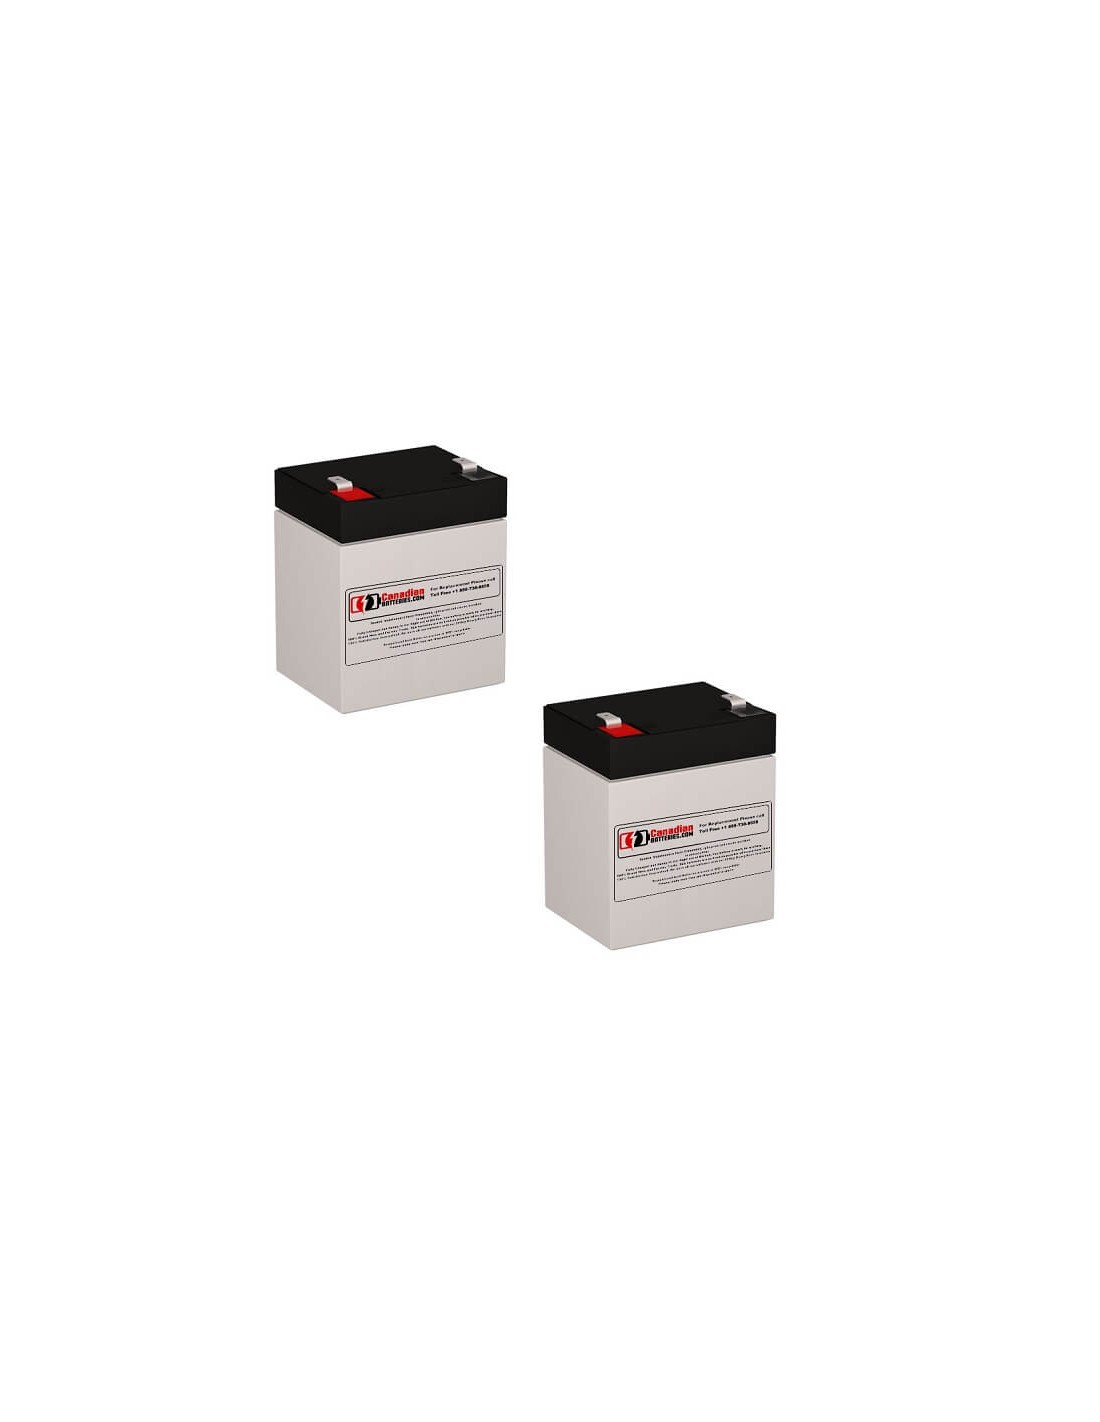 Batteries for Belkin F6c1200-unv UPS, 2 x 12V, 5Ah - 60Wh